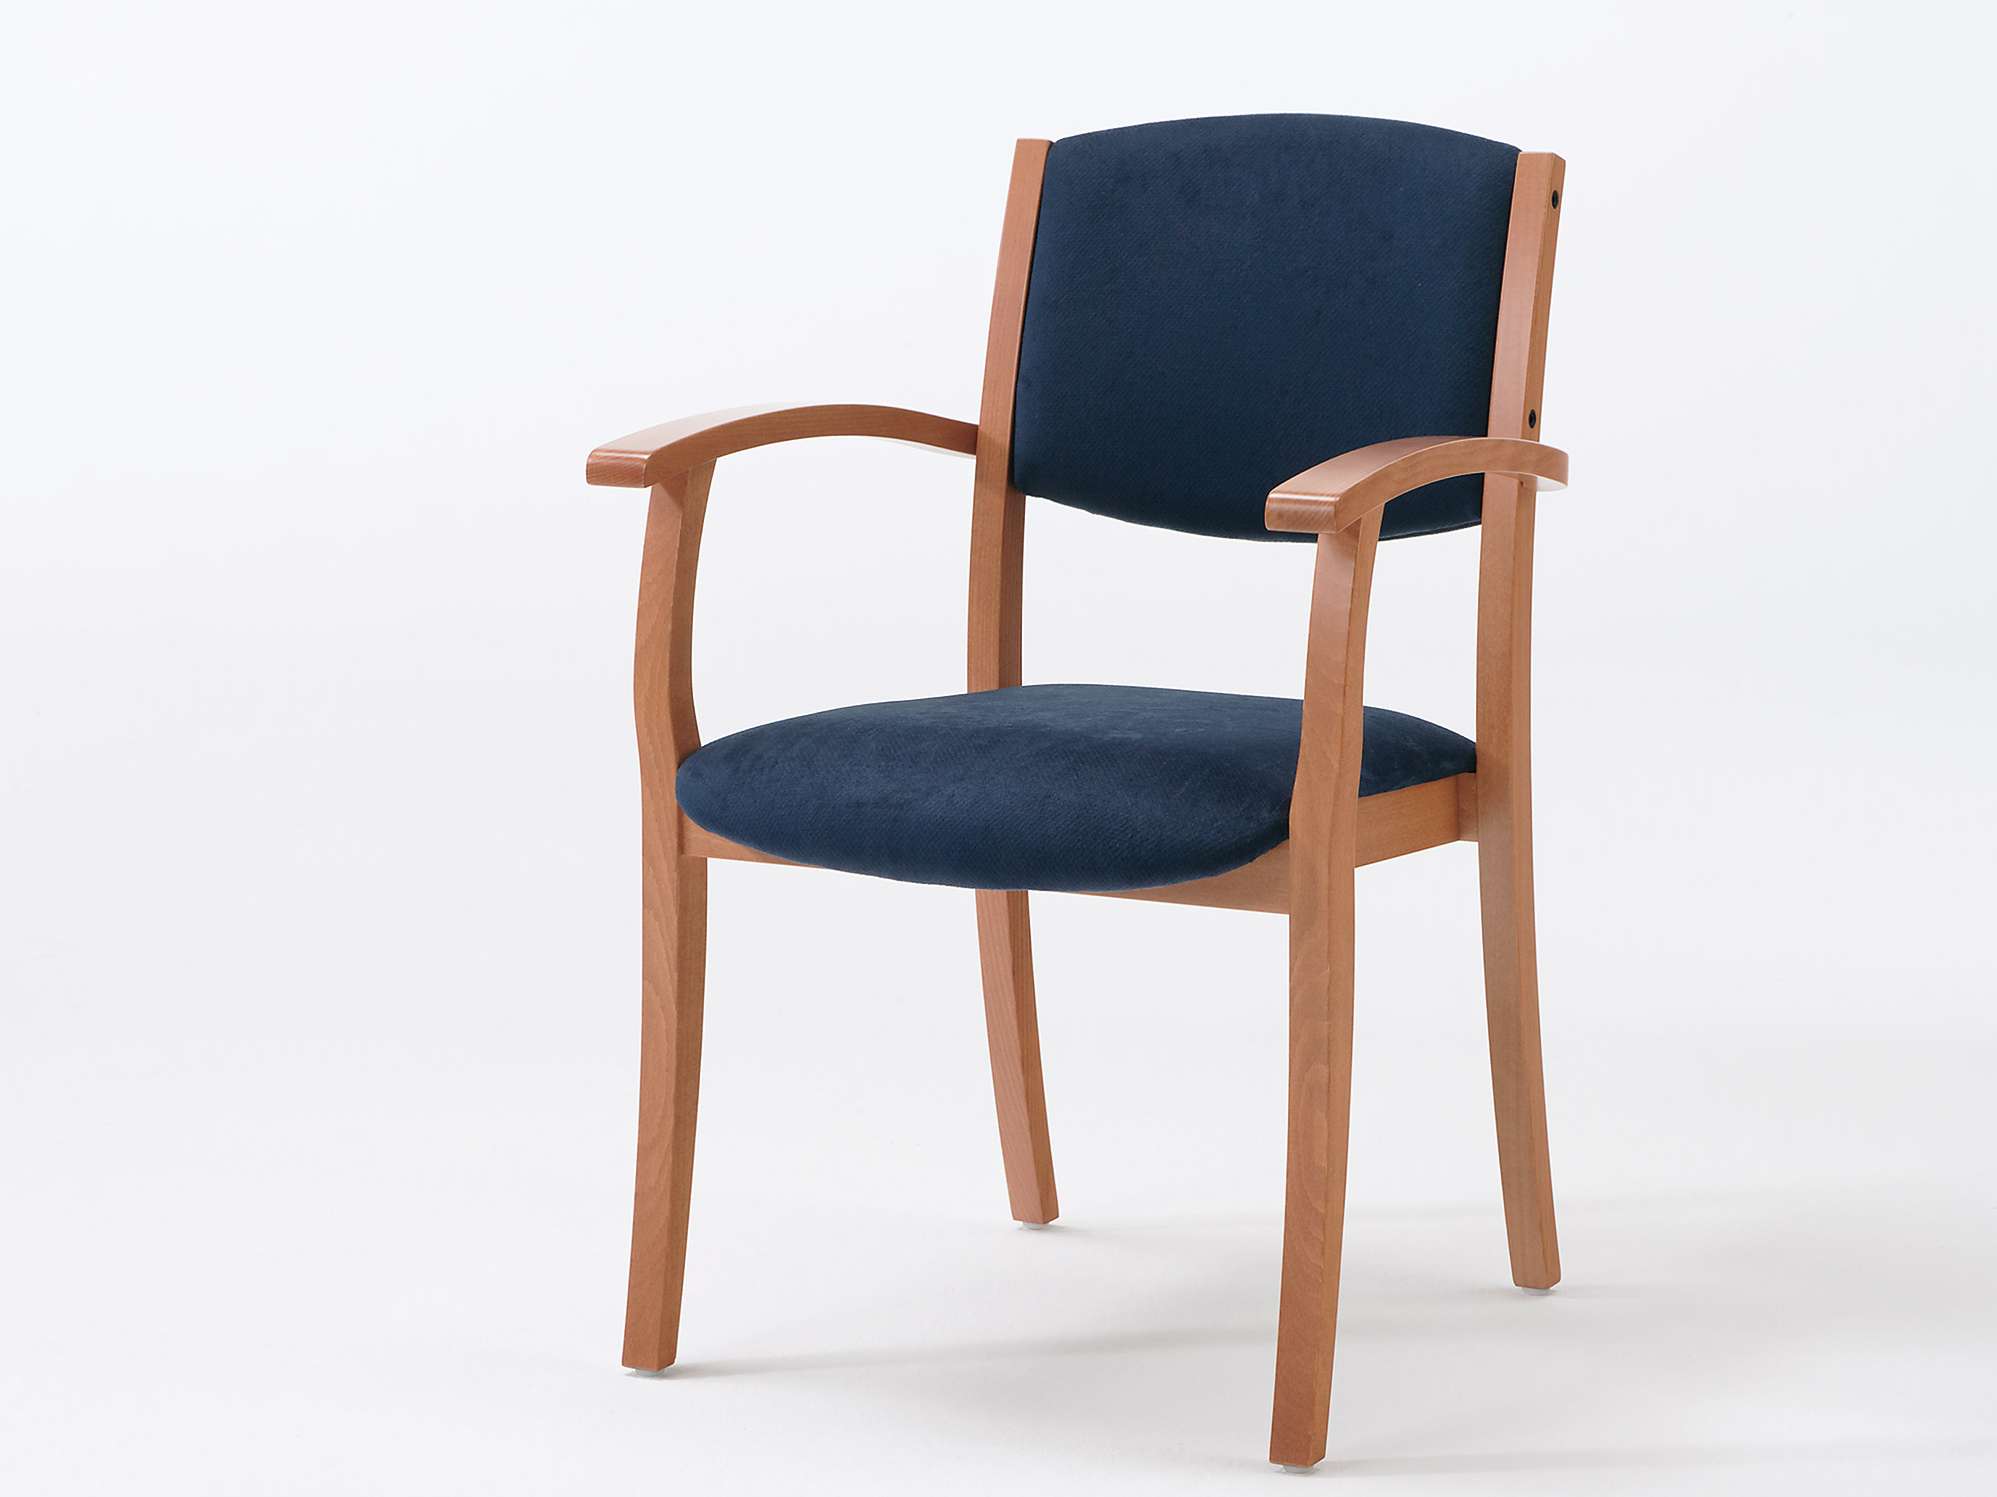 Sedego-malli päällekkäin pinottavana ja käsinojallisena tuolina